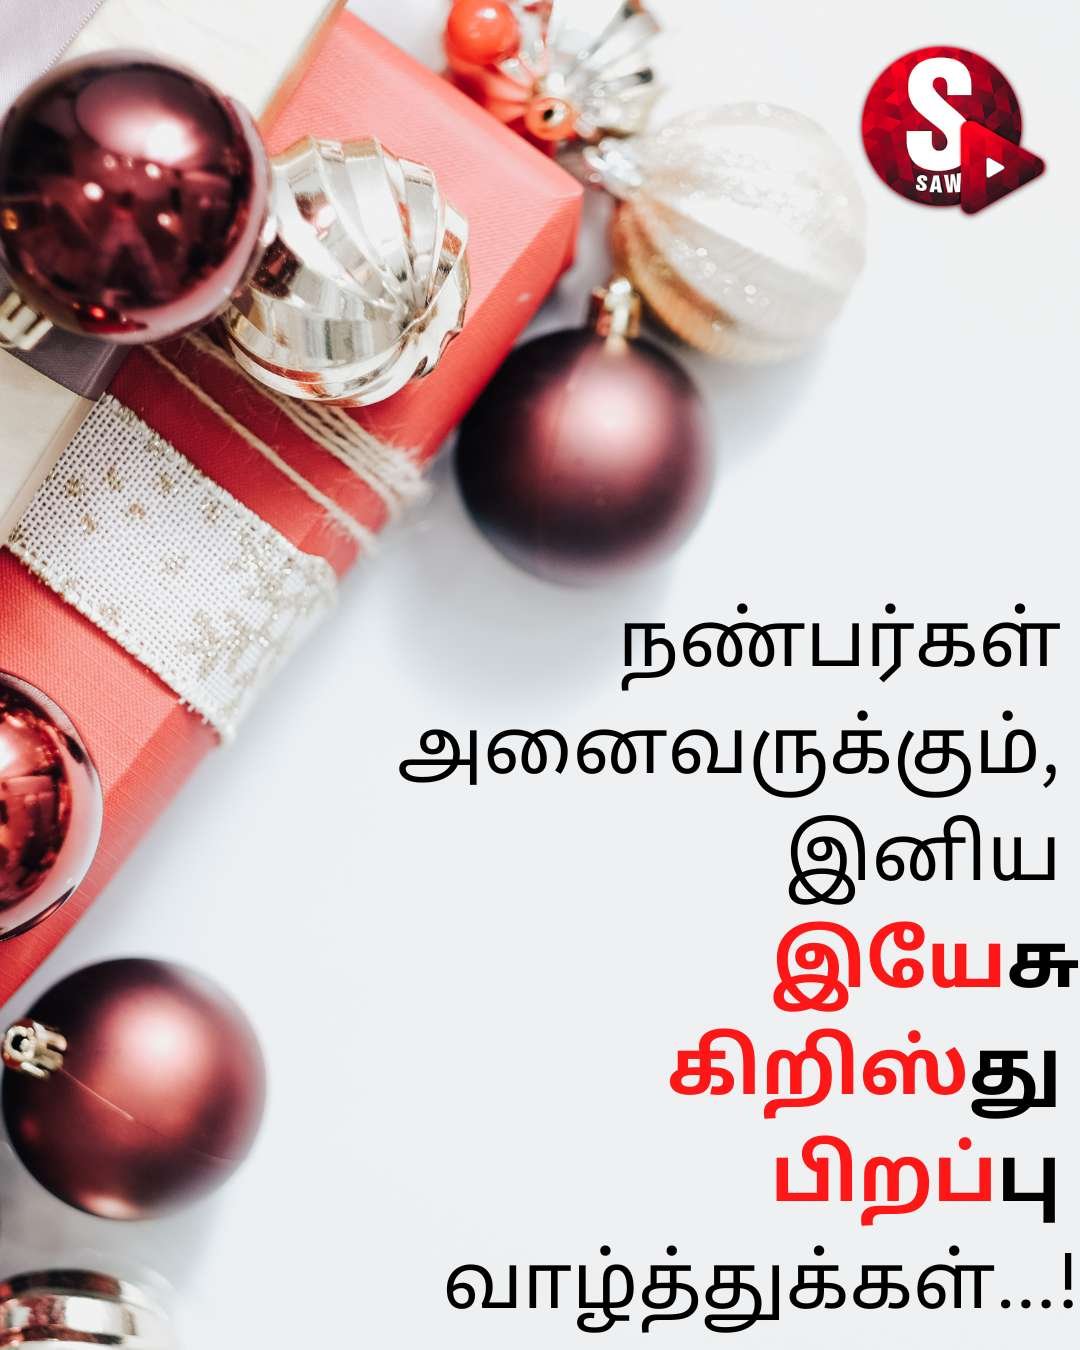 Christmas Wishes Tamil | அனைவர்க்கும் இனிய கிறிஸ்துமஸ் தின வாழ்த்துக்கள்